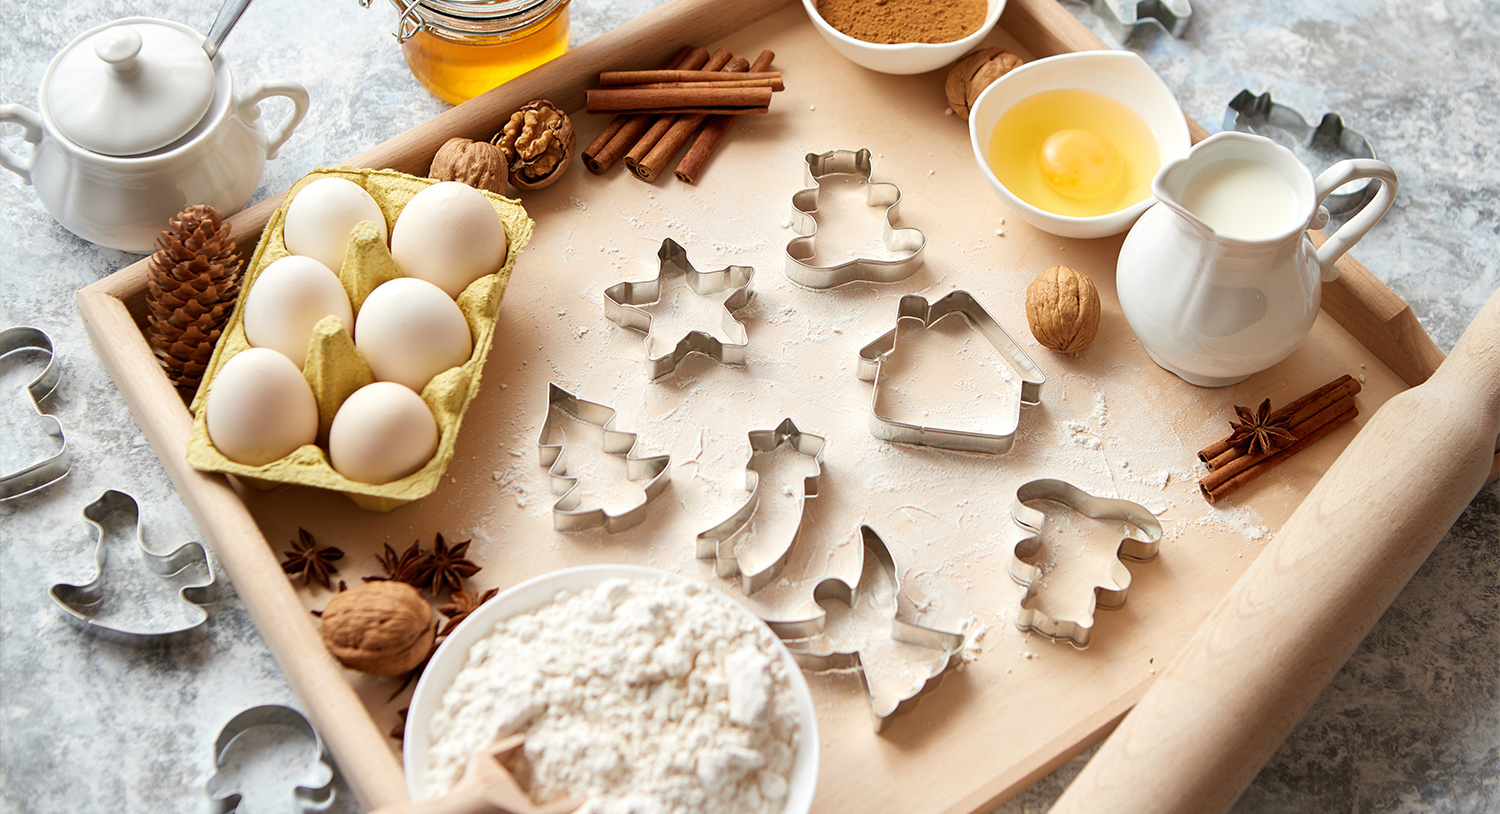 składniki-na-pierniki-świąteczne-jajka-mleko-żółtko-kakao-miód-foremki-świąteczne-mąka-proces-przygotowywania-pierników